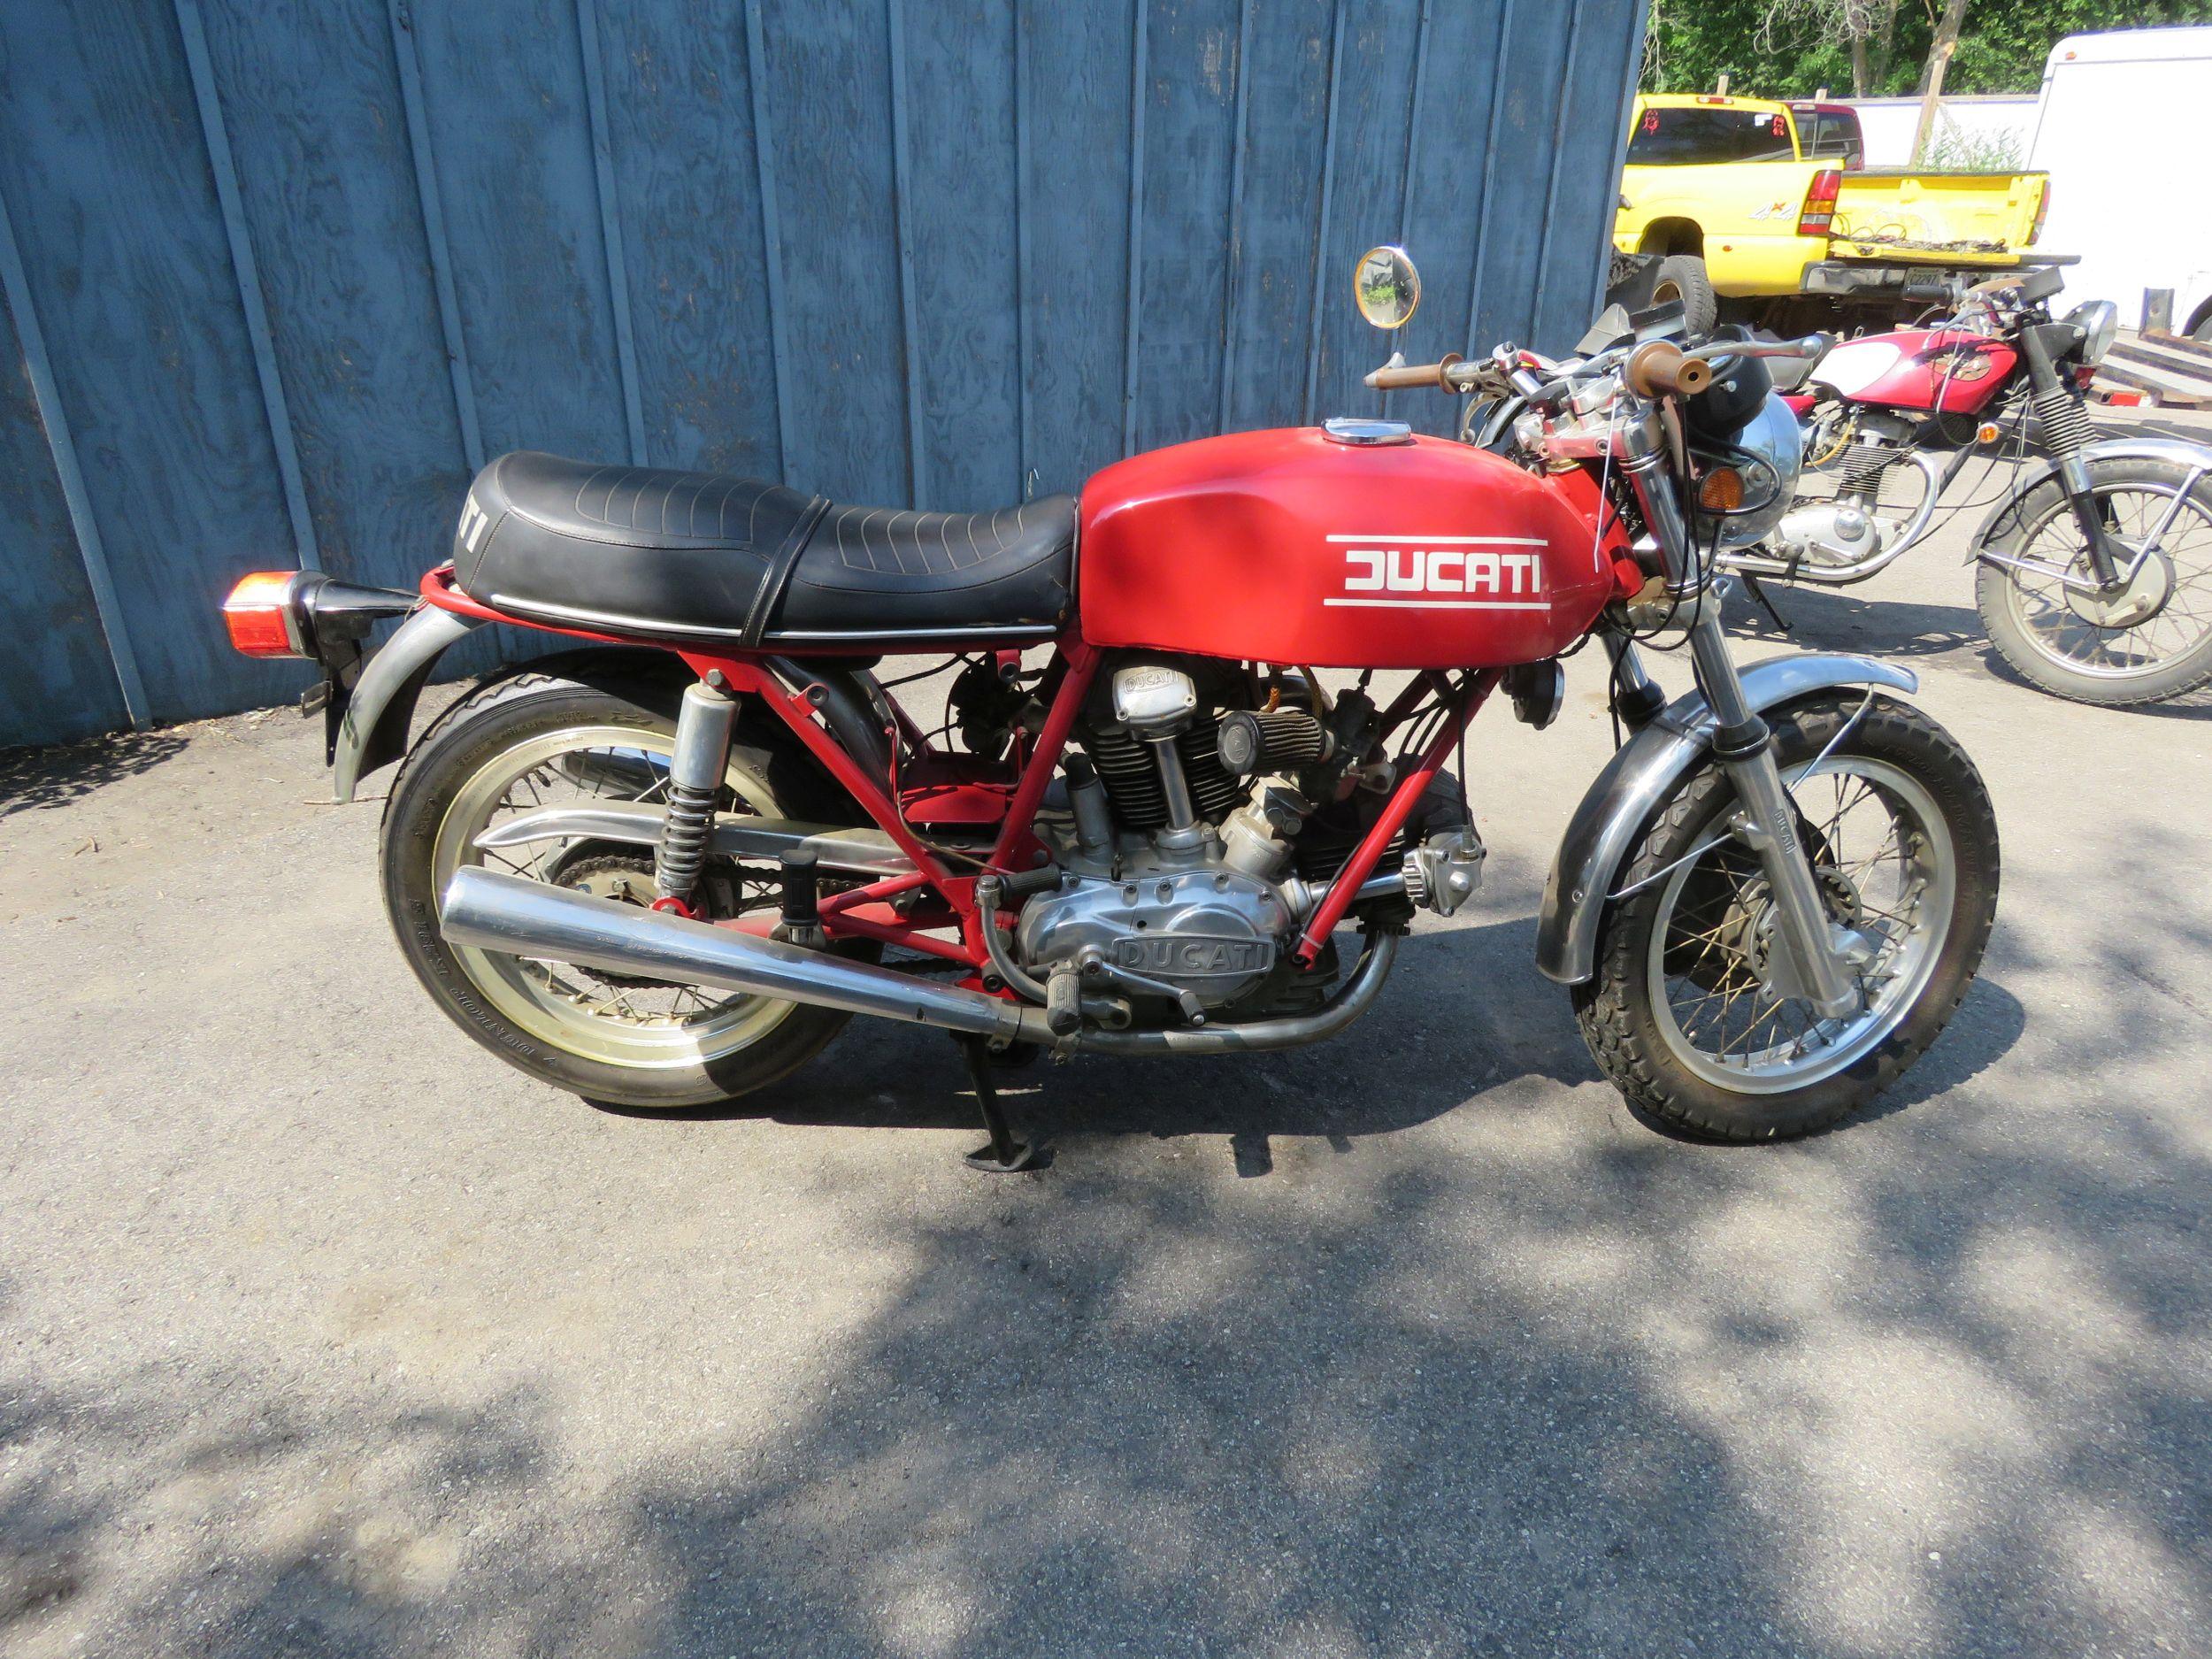 1974 Ducati Marzoochi Motorcycle